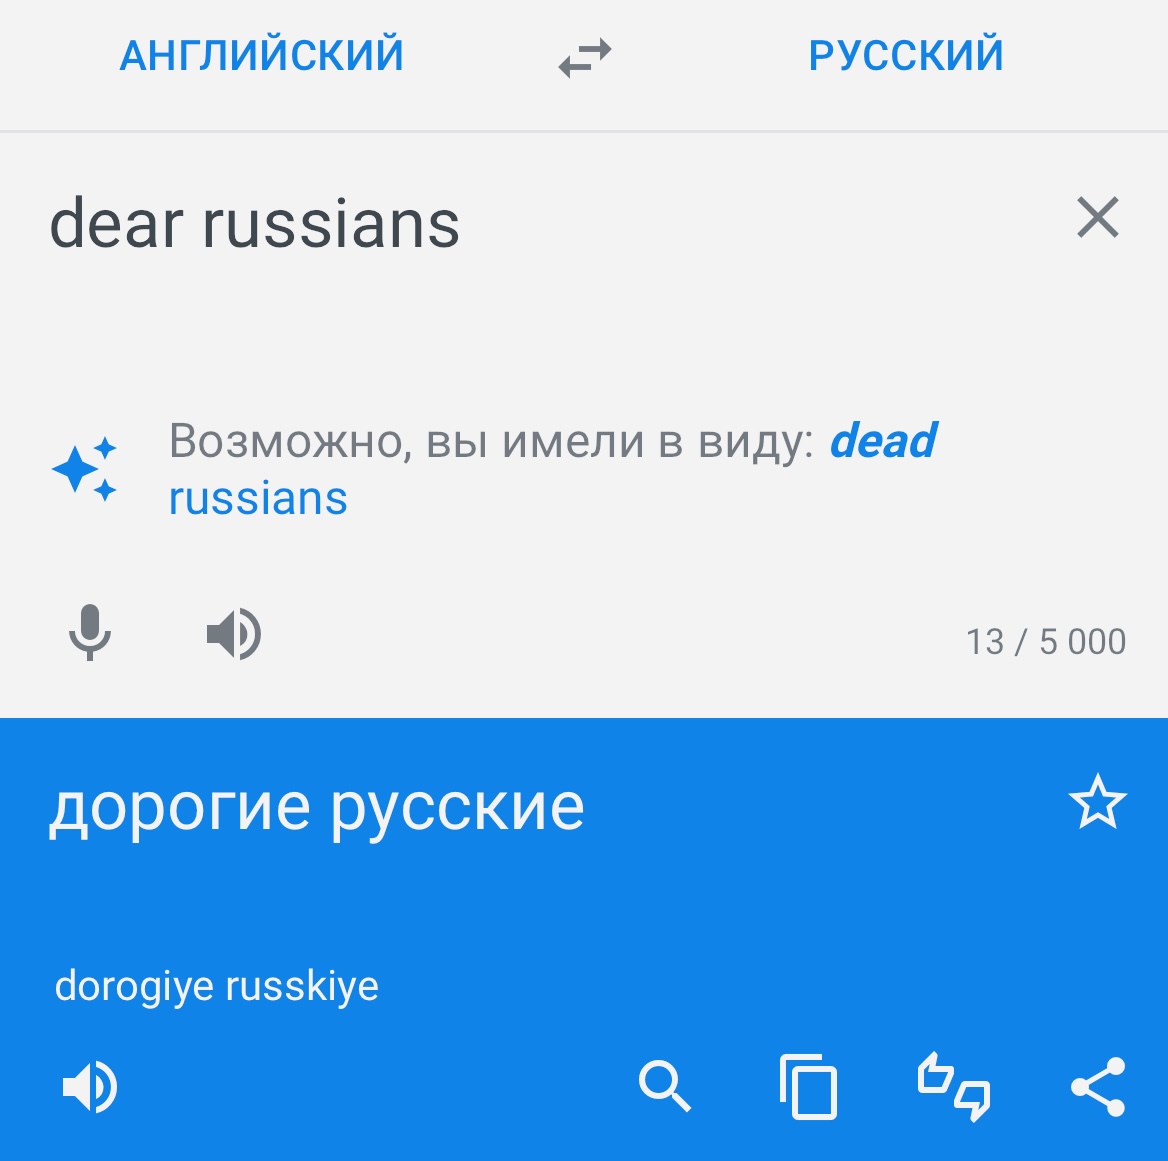 Google Переводчик предлагает заменить dear russians на dead russians